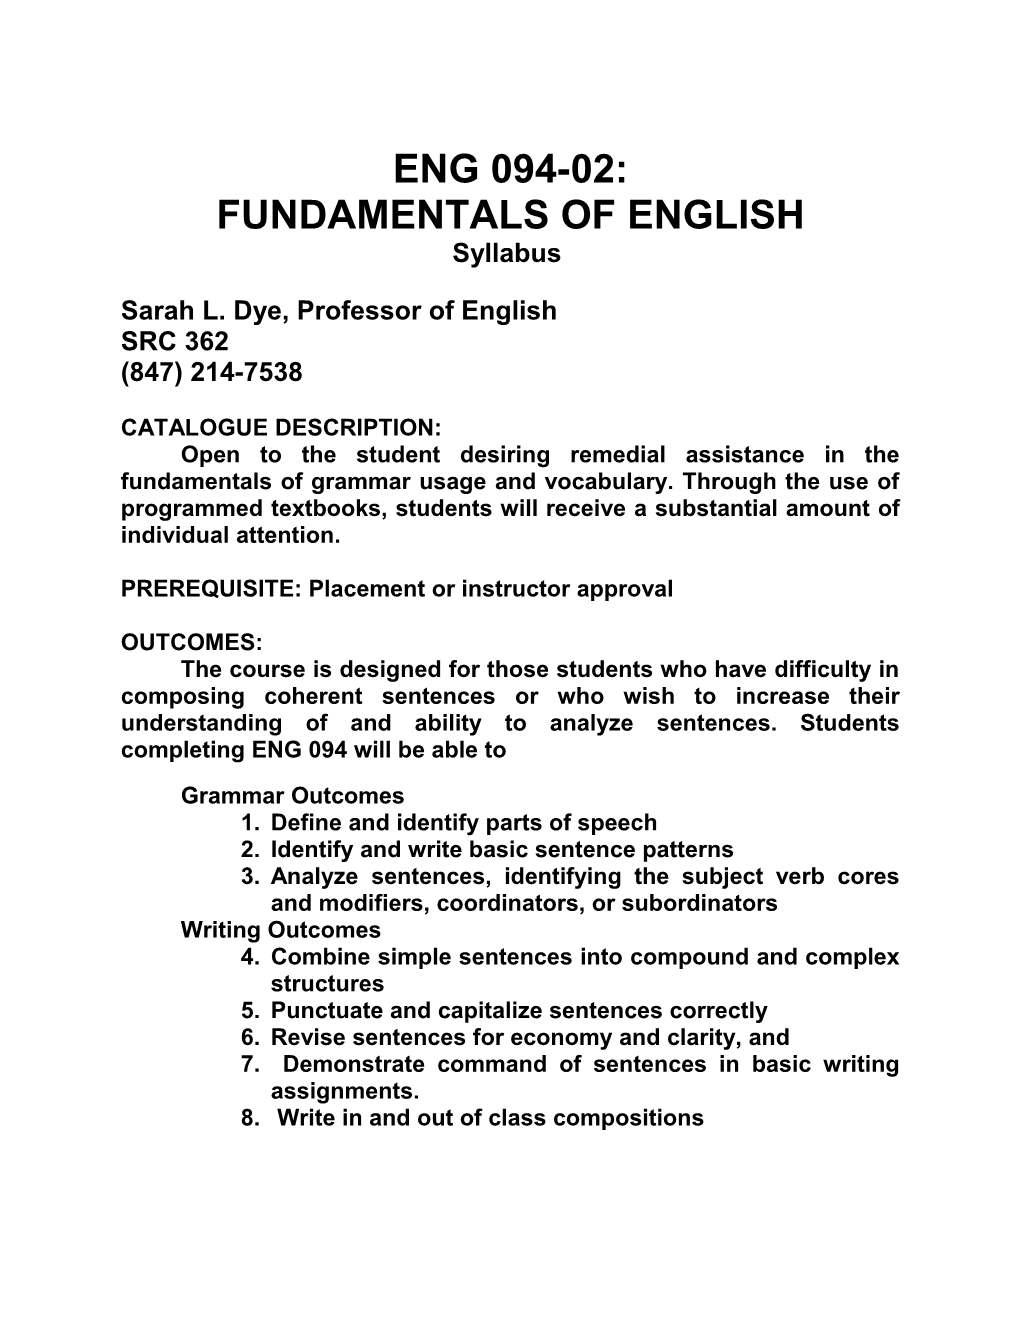 Eng 094: Fundamentals of English